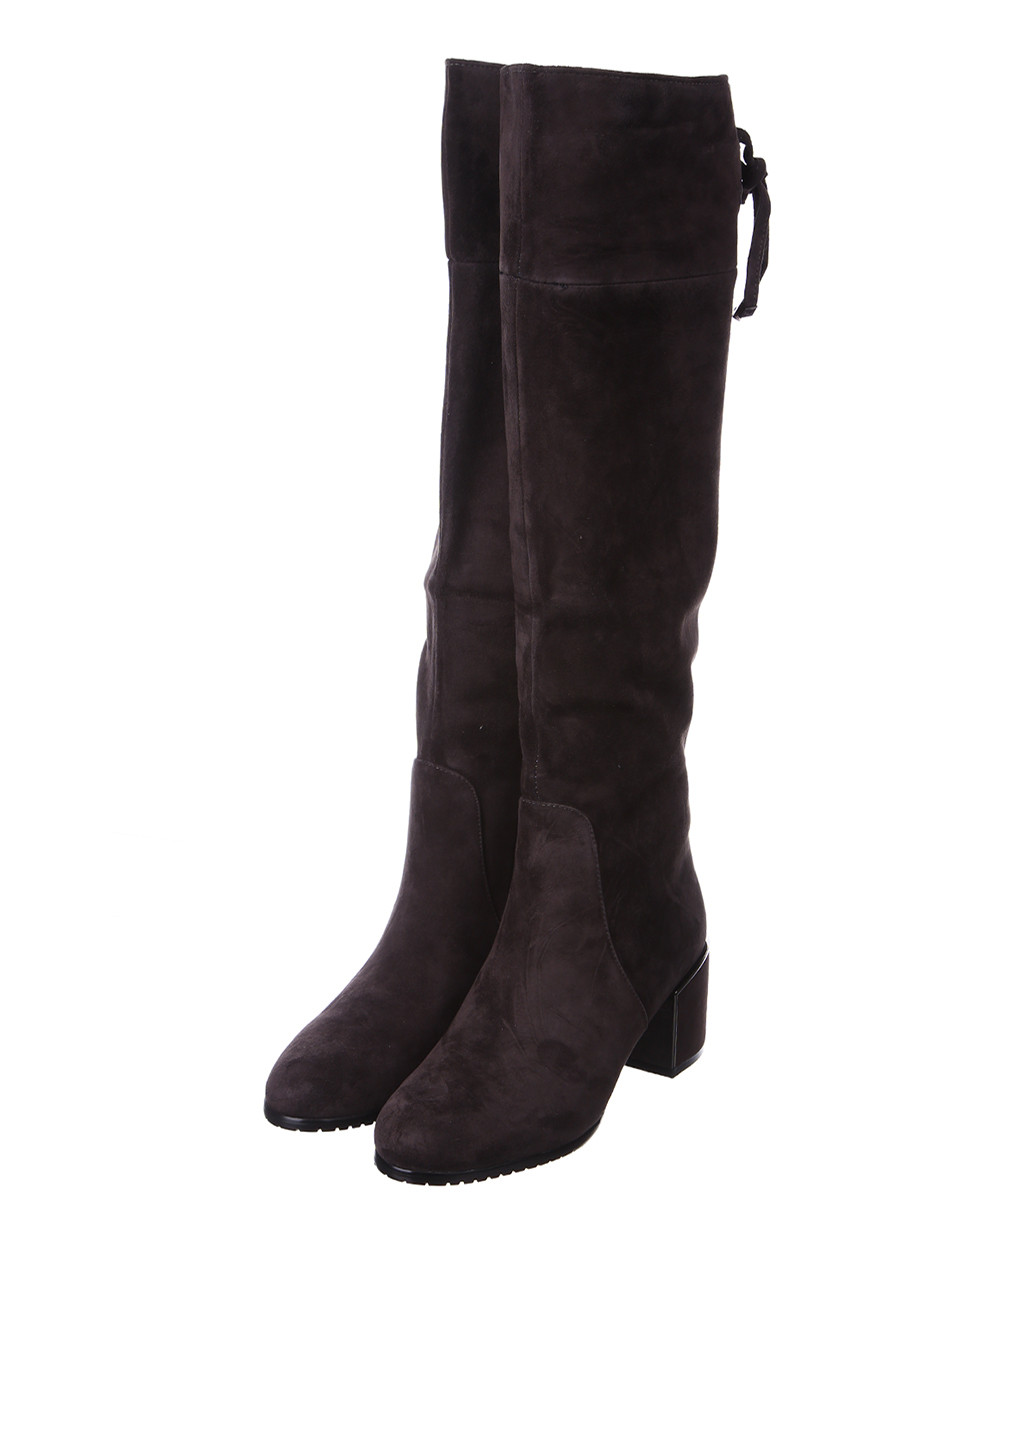 Темно-серые зимние сапоги Blizzarini на среднем каблуке с шнуровкой